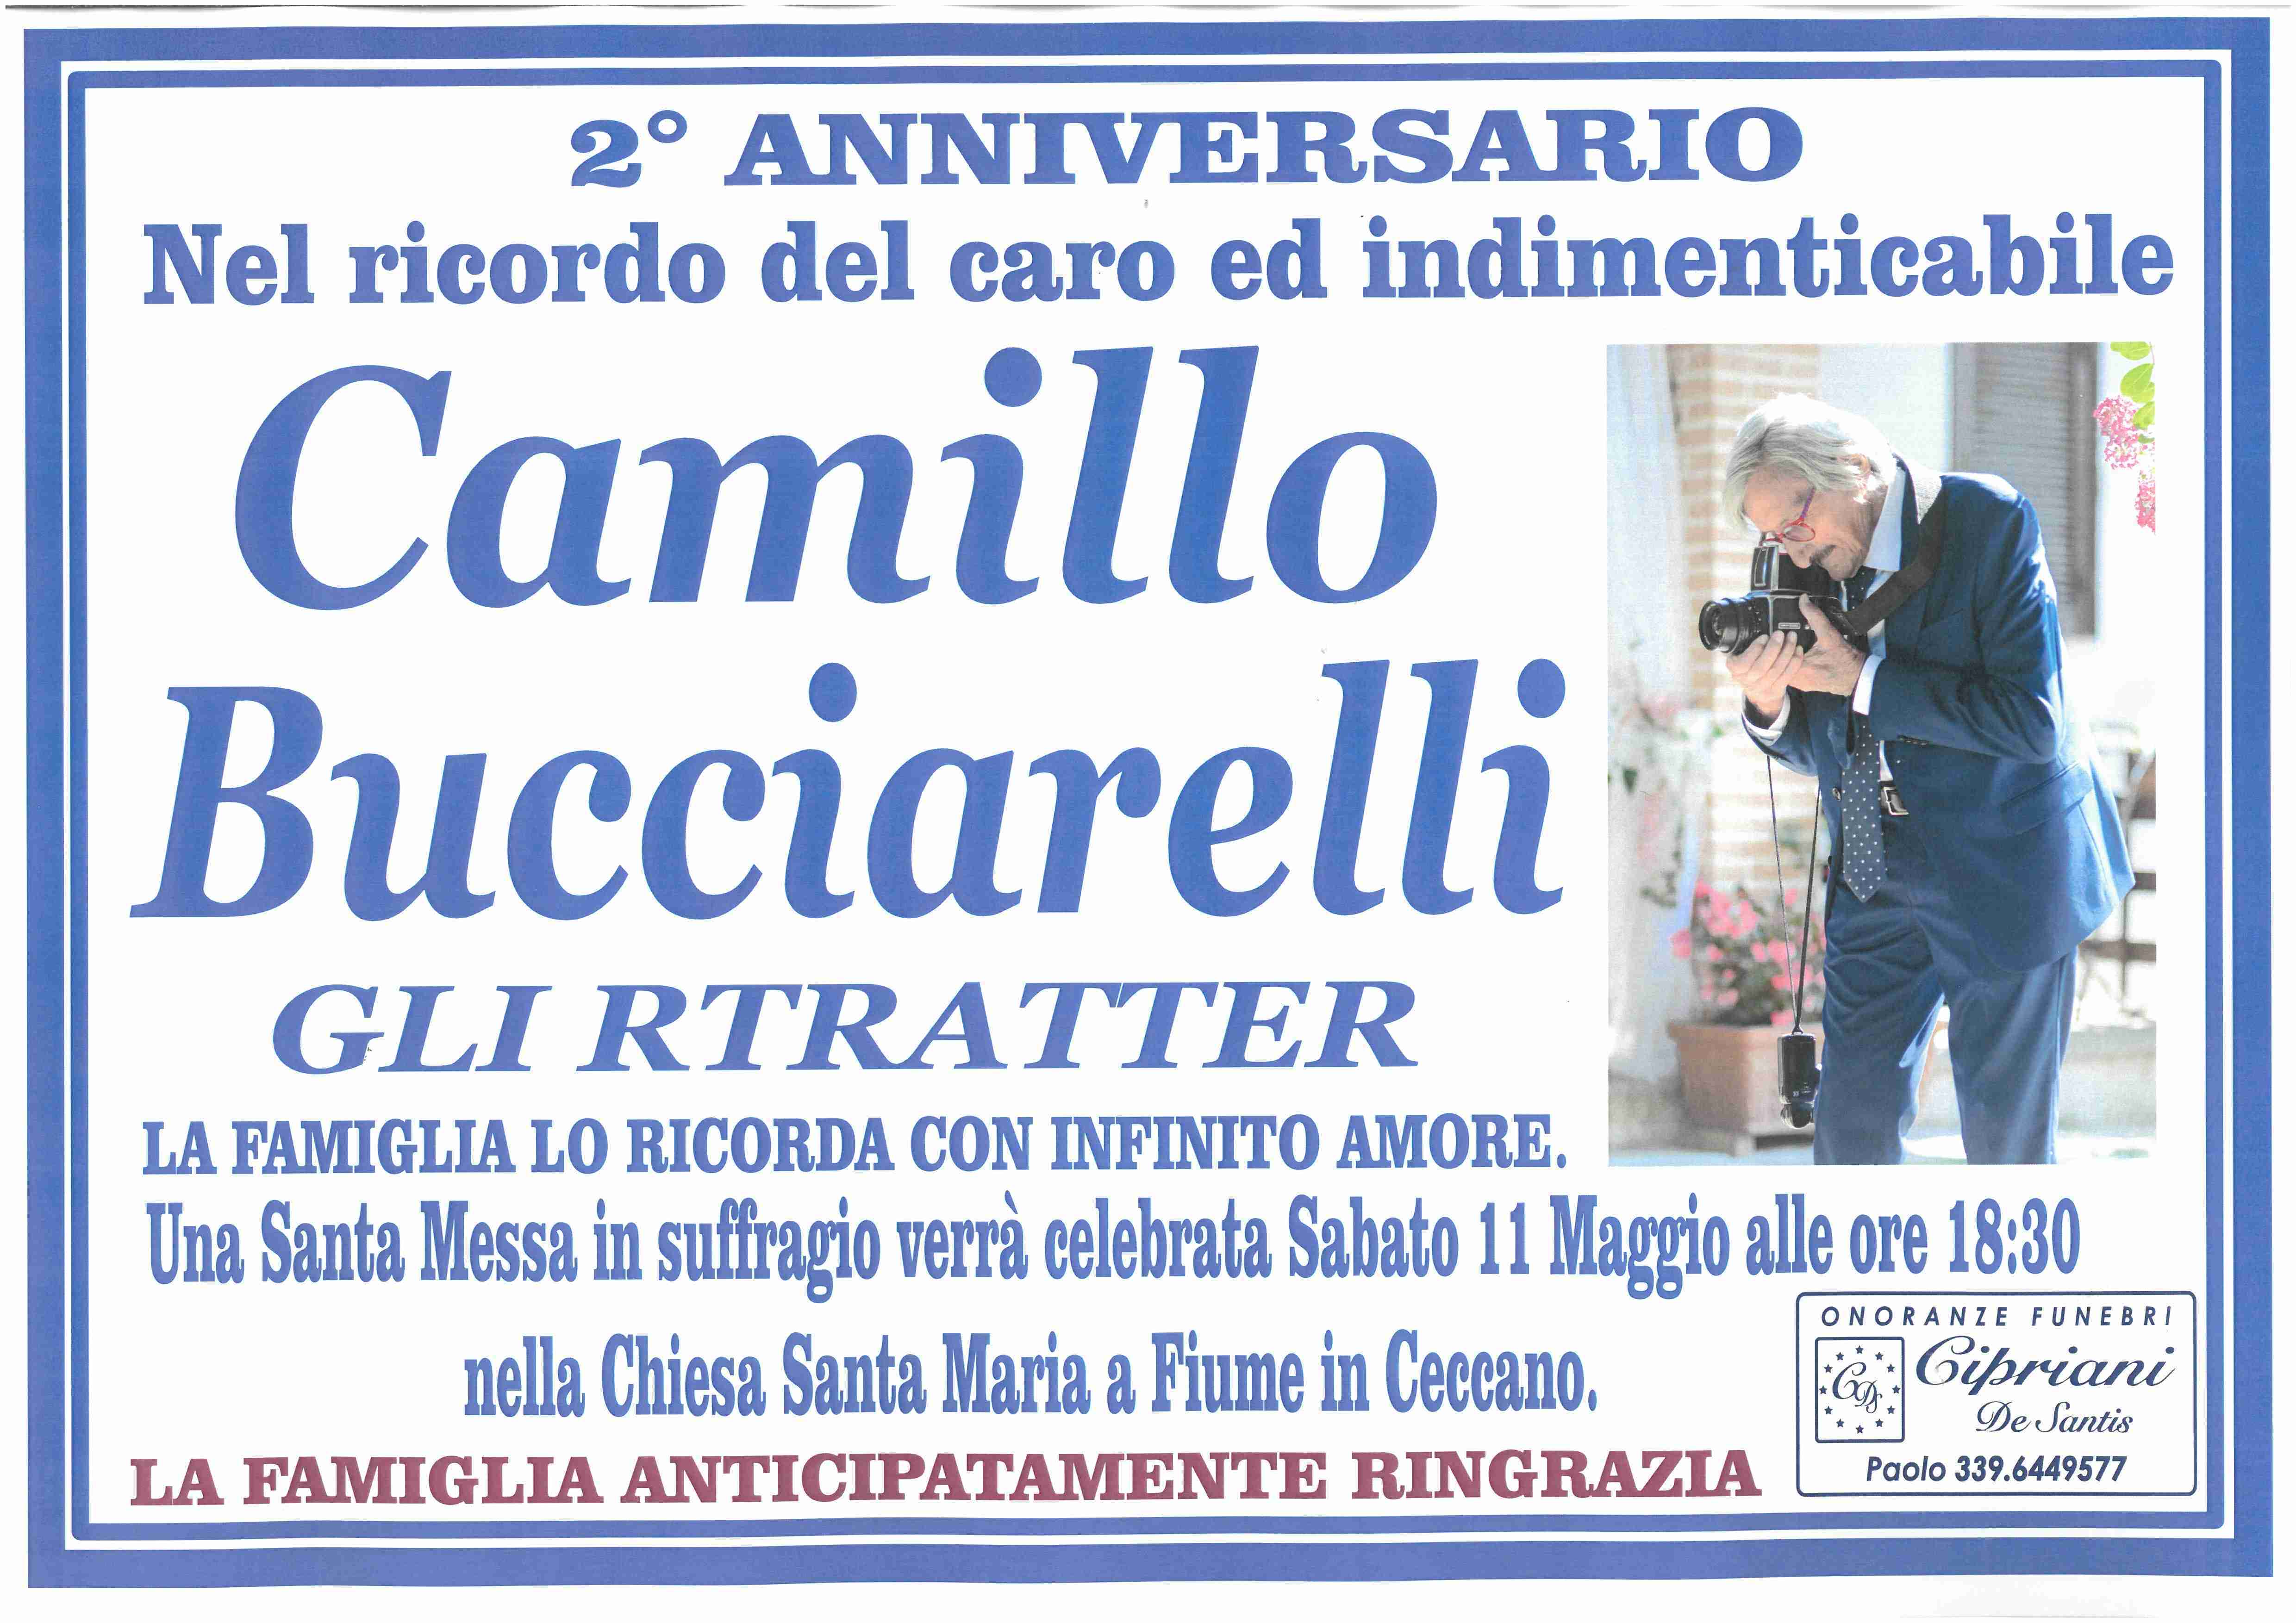 Camillo Bucciarelli